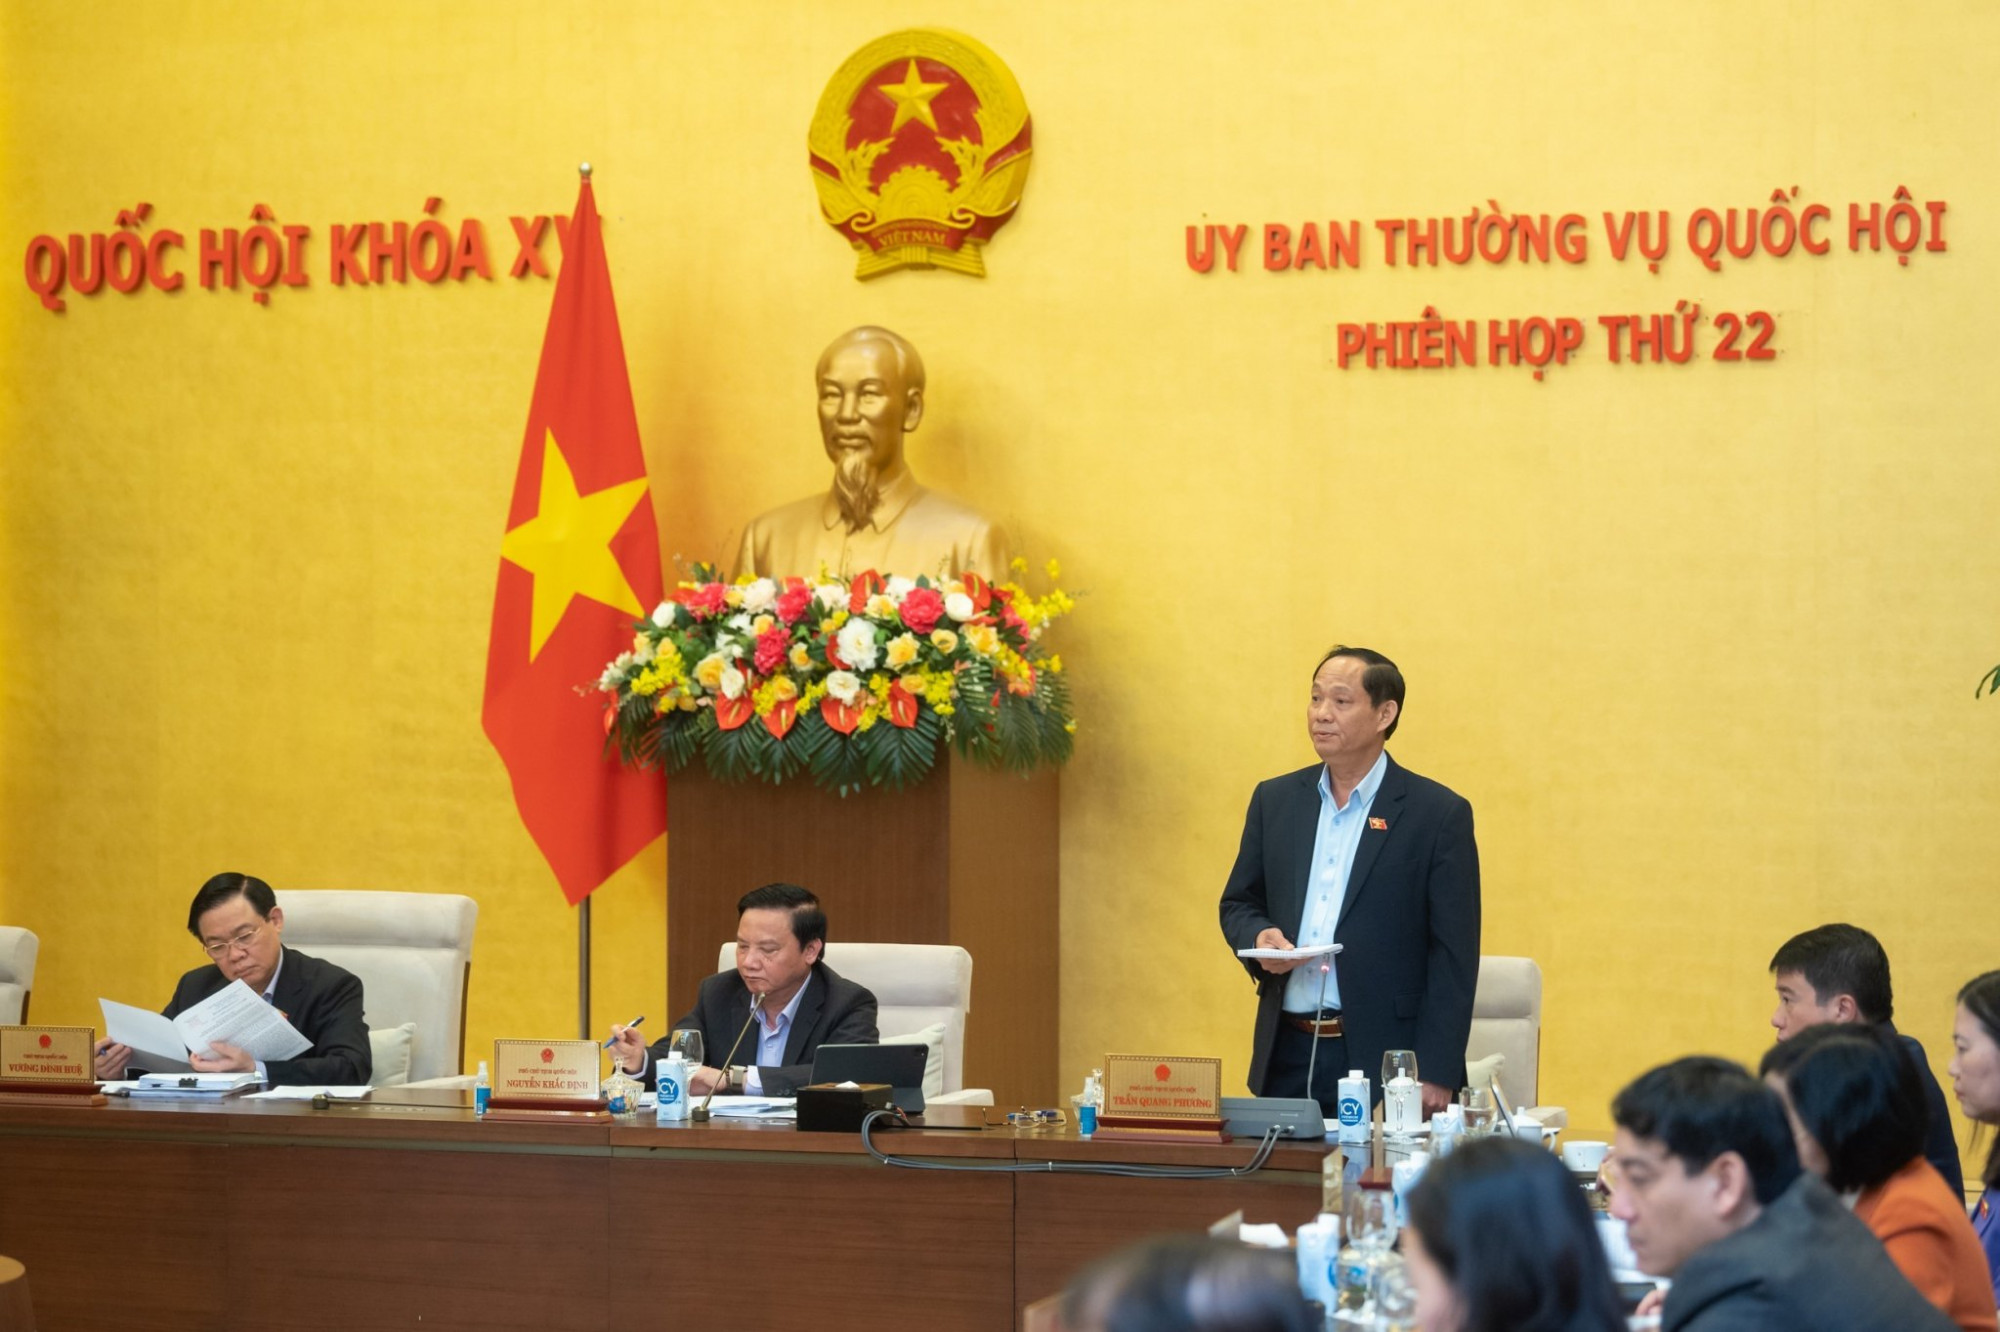 Phó chủ tịch Quốc hội Trần Quang Phương đề nghị làm rõ khoảng trống pháp lý trong triển khai công tác phòng chống COVID-19